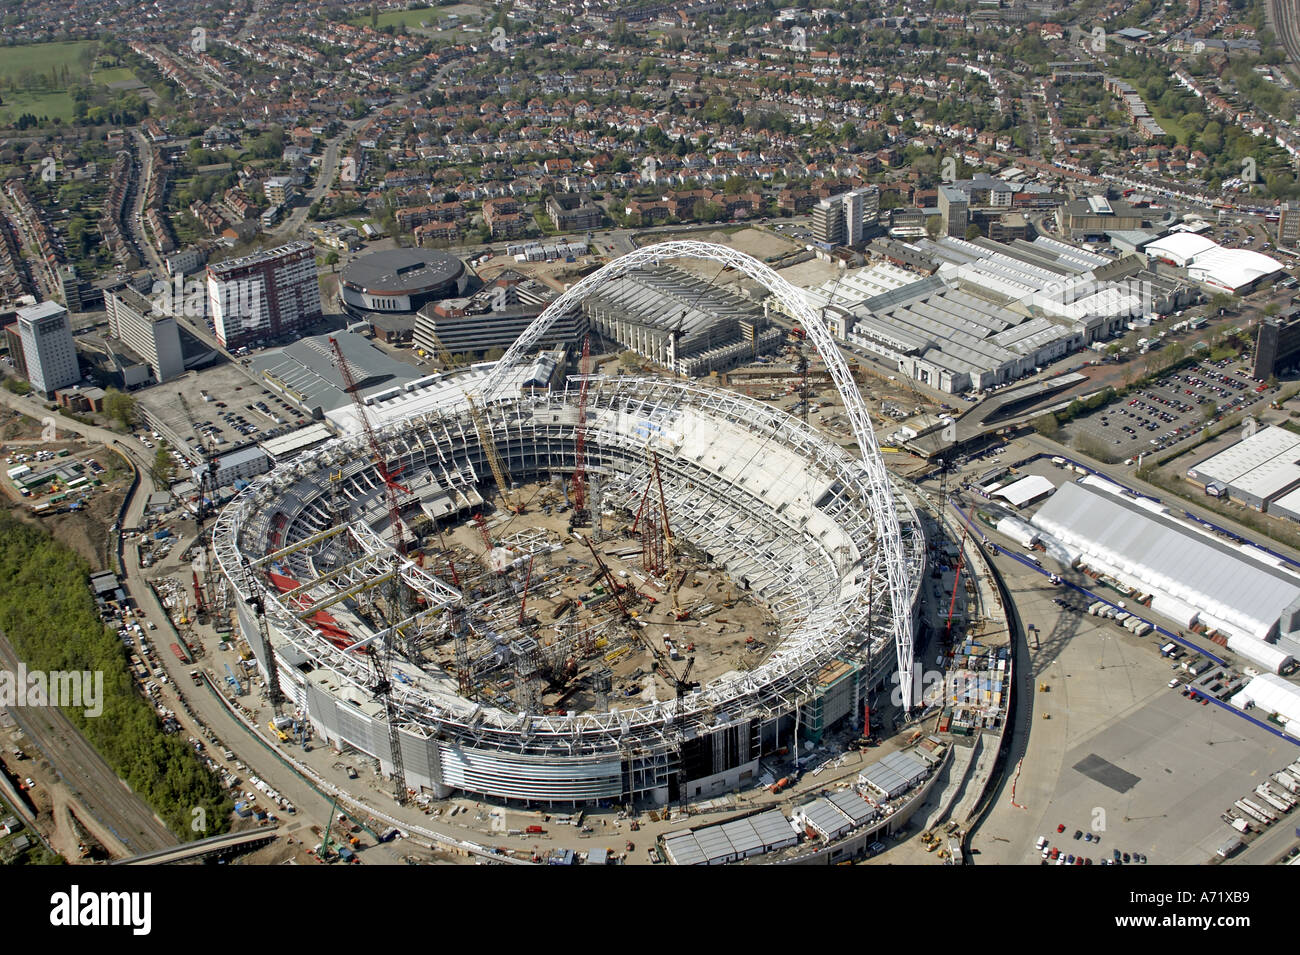 Haut niveau de l'antenne vue oblique au nord-ouest de nouveau stade de Wembley en construction London HA9 Angleterre Avril 2005 Banque D'Images